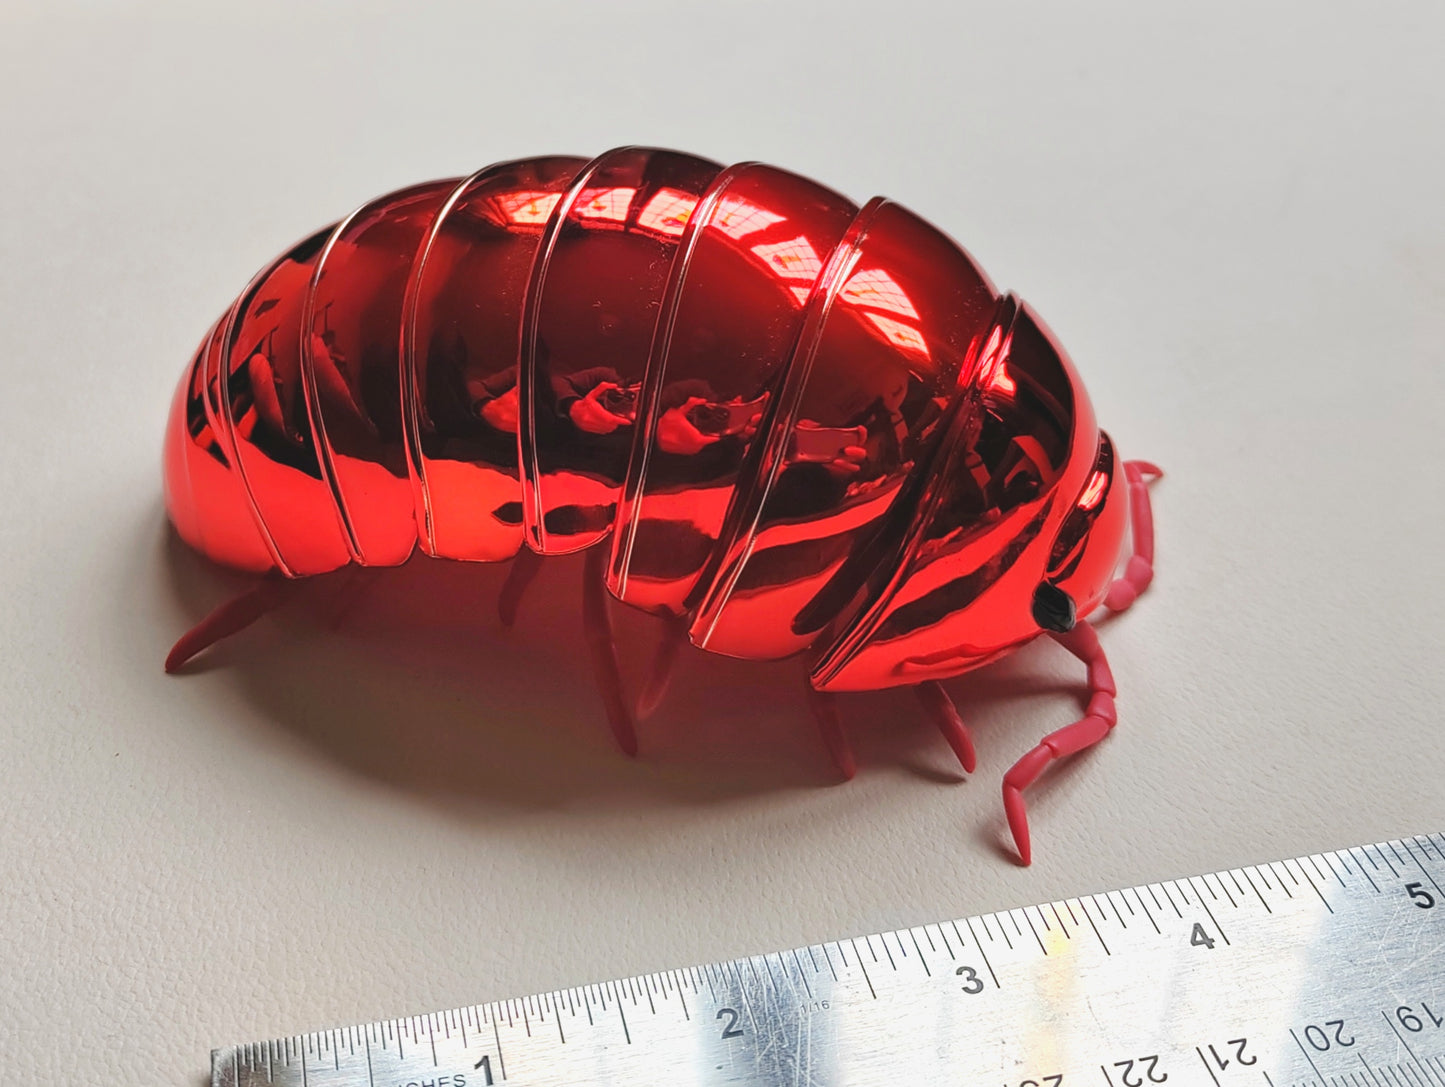 Dangomushi - Isopod, Woodlouse, Pillbug figures! Various options, Japanese exclusives.